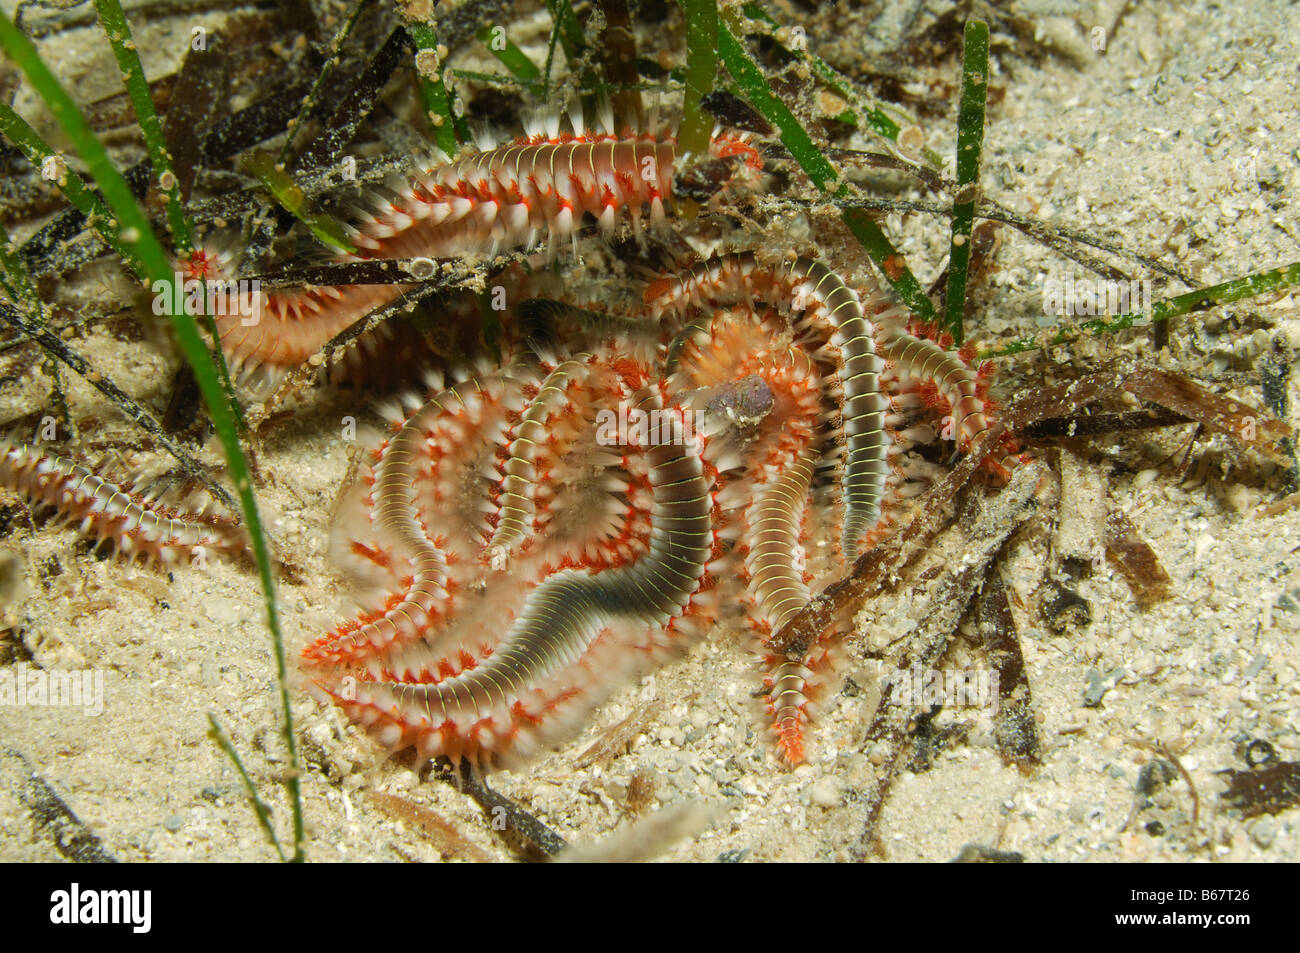 Bristle Fire Worms Hermodice carunculata Kas Mediterranean Sea Turkey Stock Photo